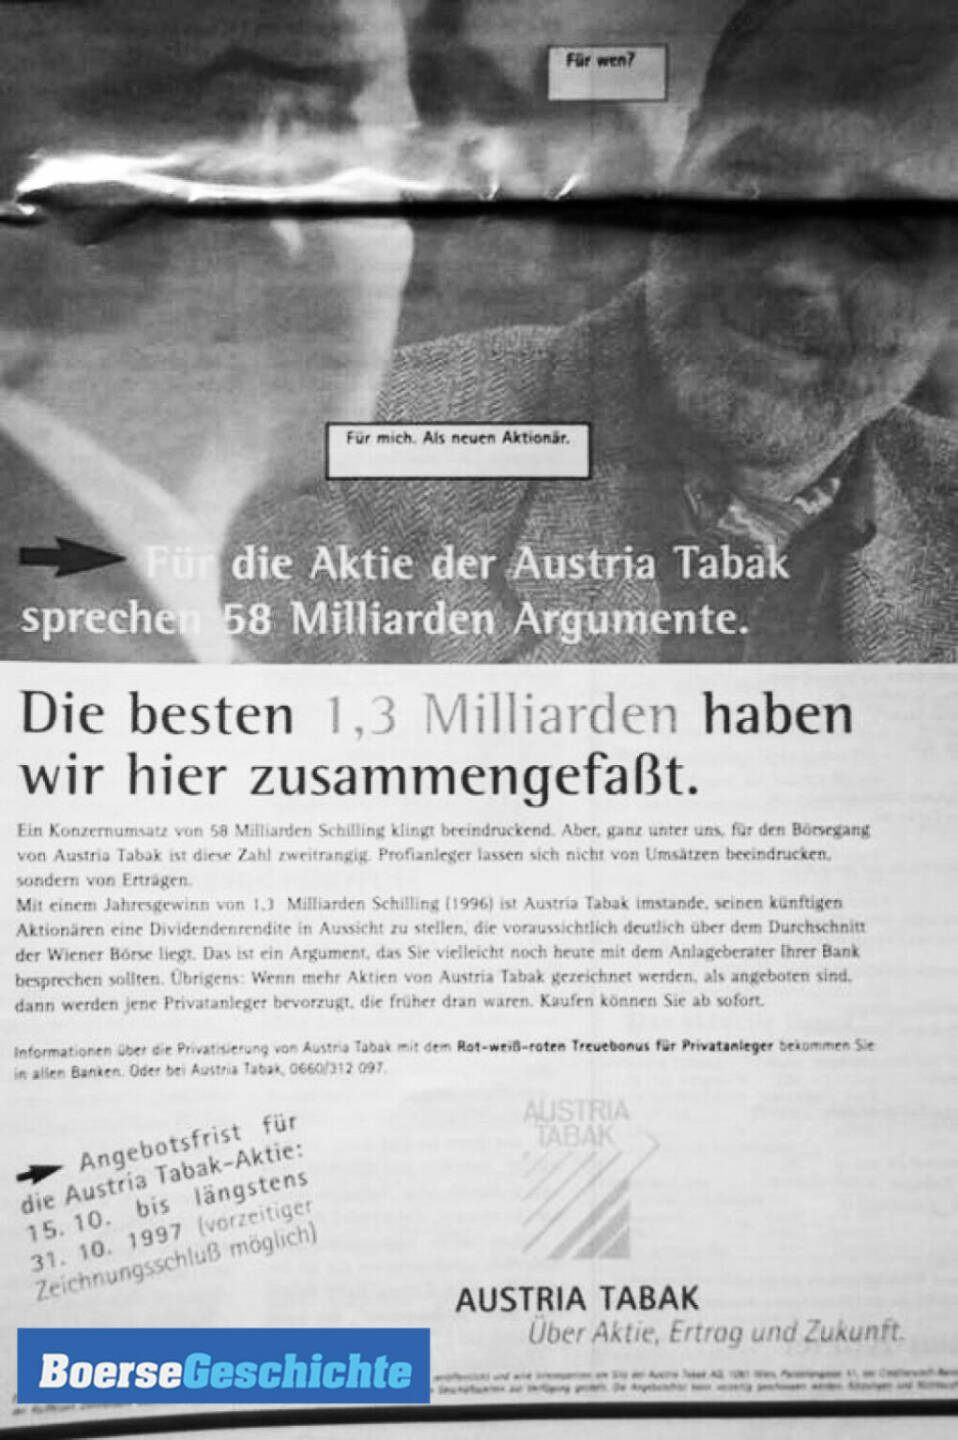 #boersegeschichte: Austria Tabak Anzeige zum IPO im Oktober 1997:  Die Austria Tabak war eine Cash Cow. Das einzige, was sie vorher falsch gemacht hatte, war die Diversifizierung in Form der Übernahme der HTM. Man wollte sich als Tabakunternehmen Gesundheitsanstrich geben, ist aber schiefgegangen. Die Aktie war so etwas wie eine Volksaktie.